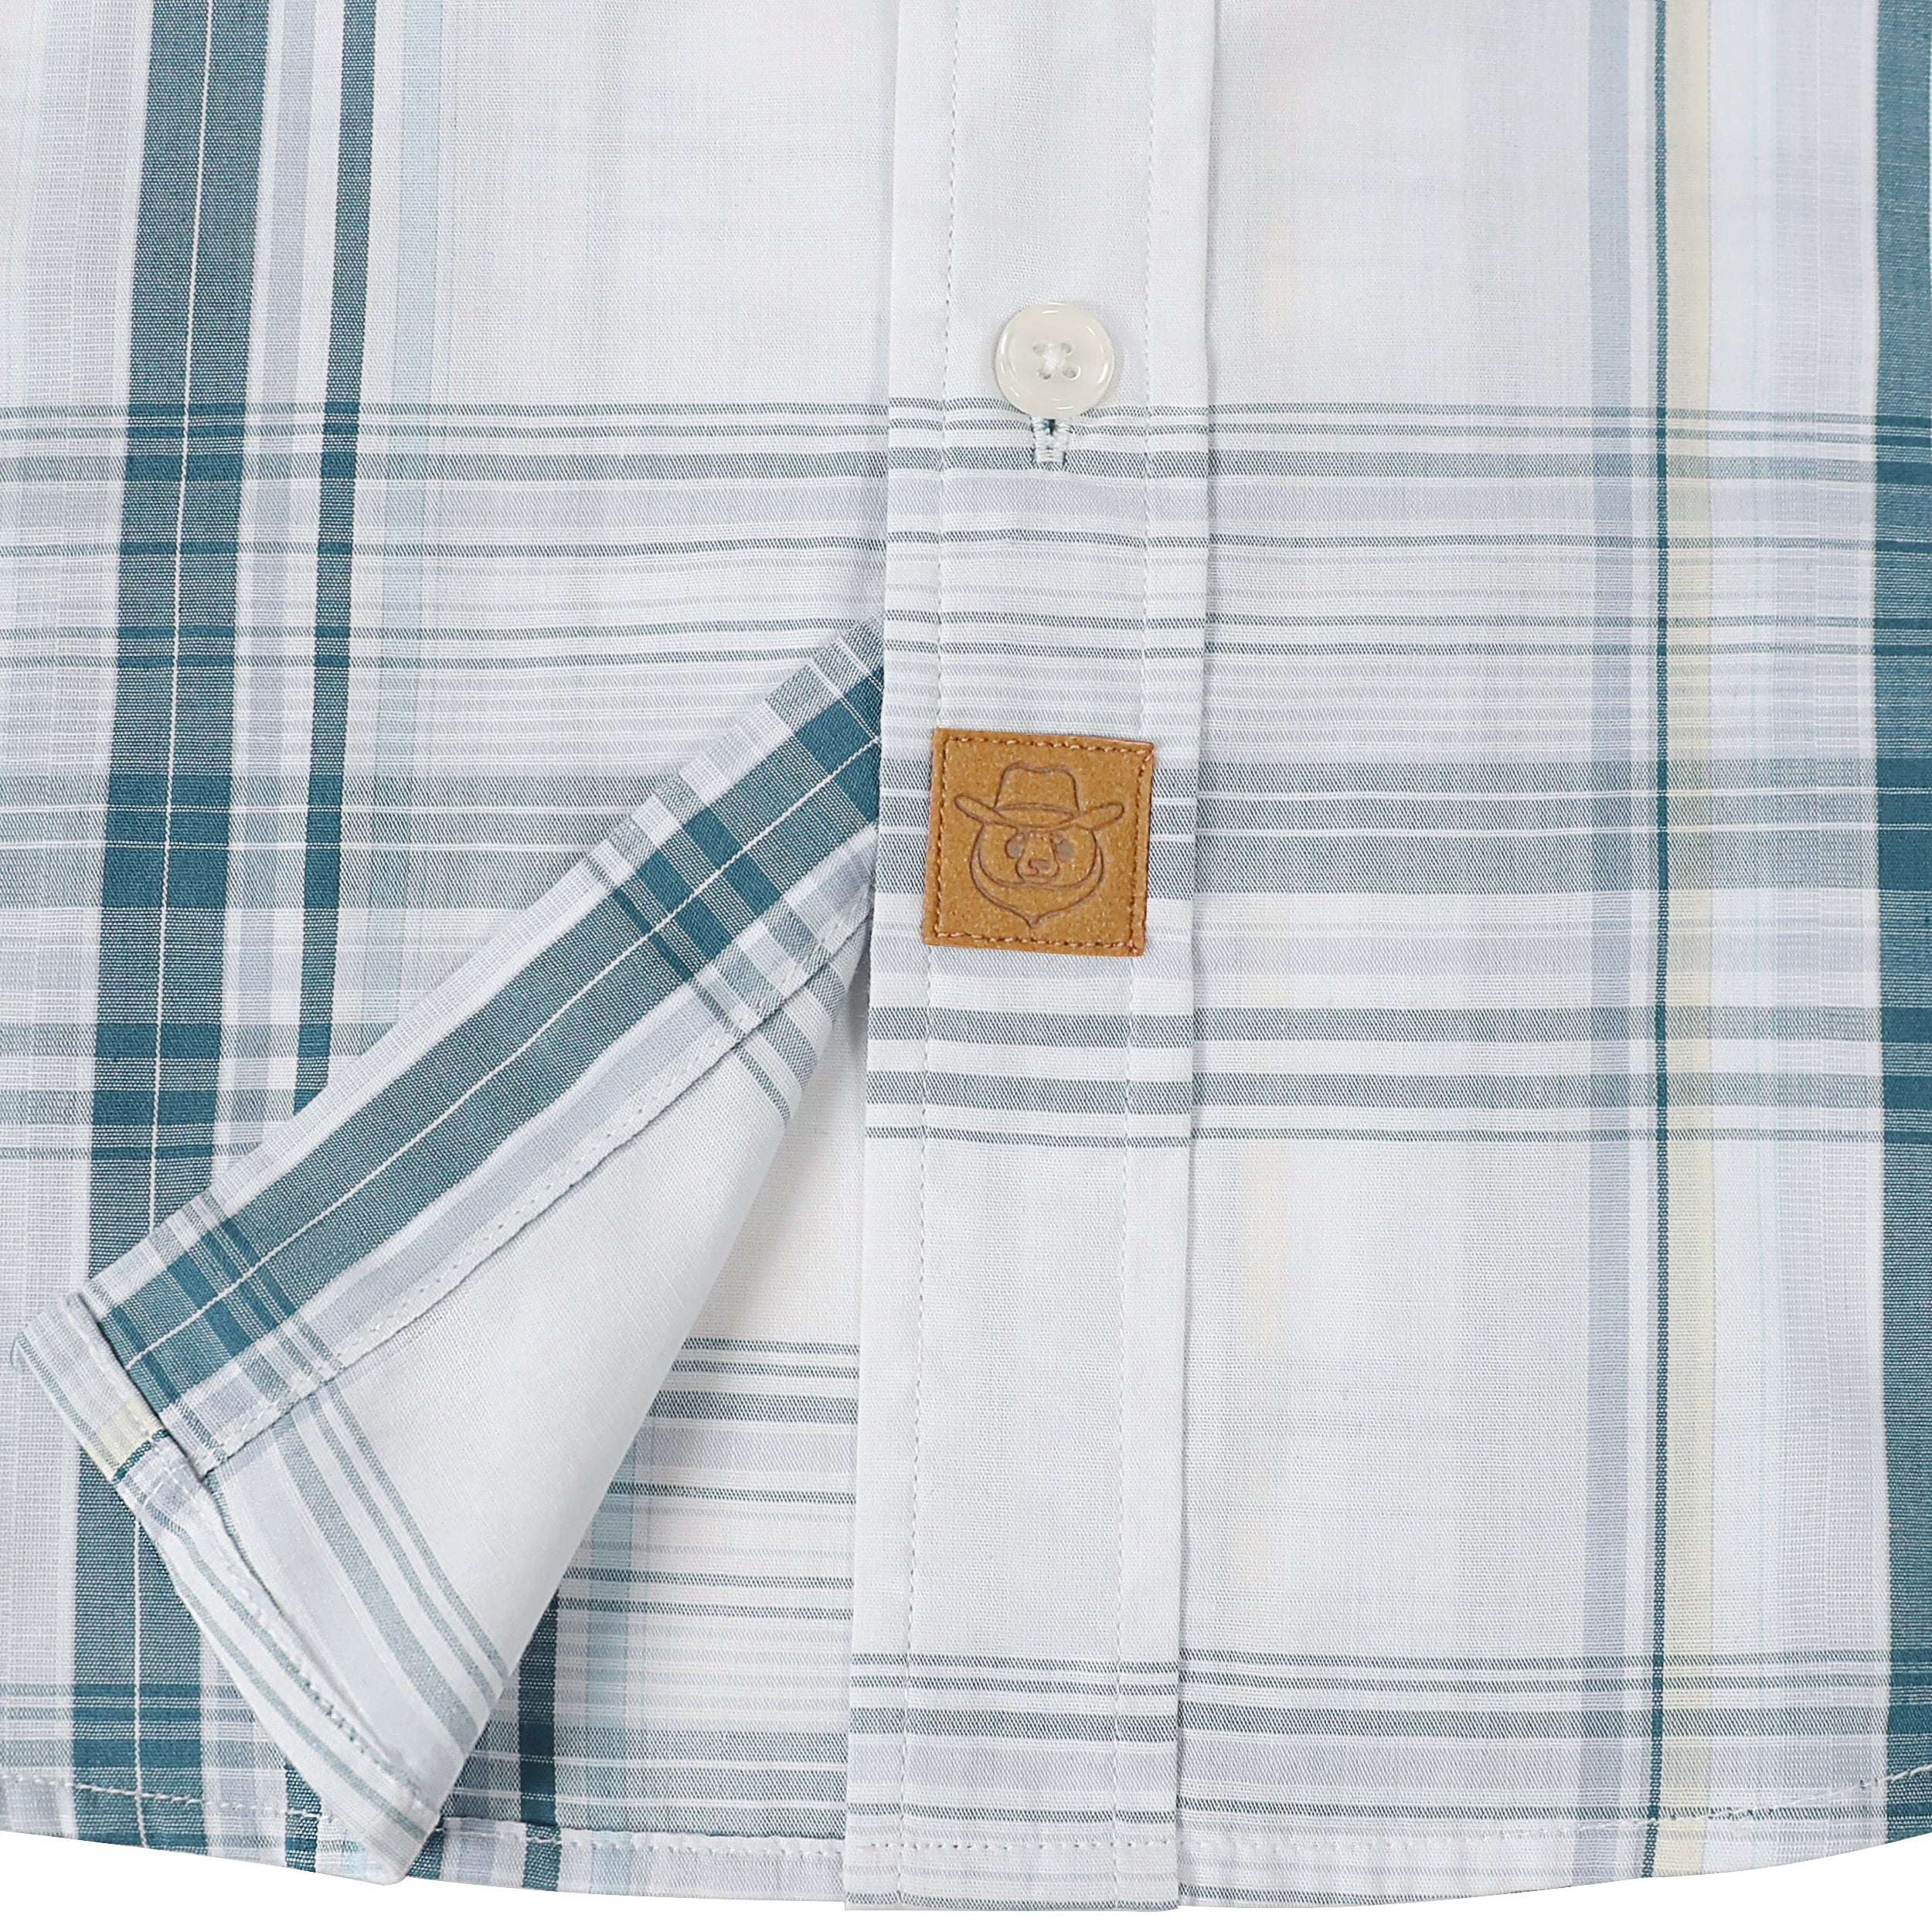 Dubinik® Mens Short Sleeve Button Down Shirts Summer Vintage Short Sleeve Button Down Men Lightweight Men's Casual Shirts#51016